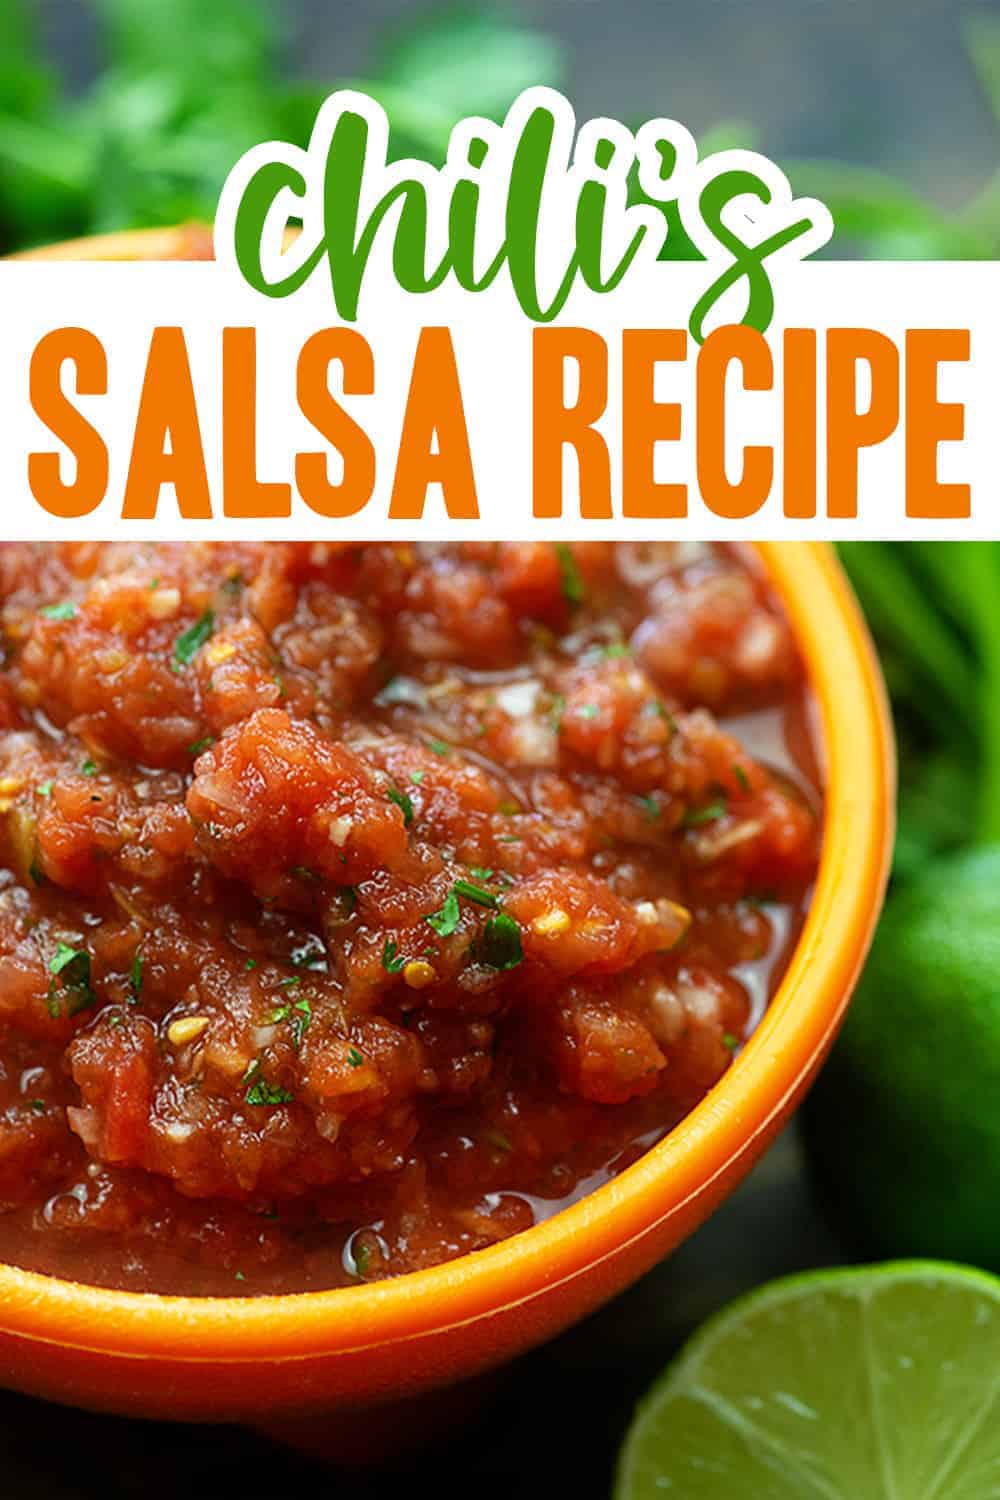 chili's salsa recipe in small bowl.